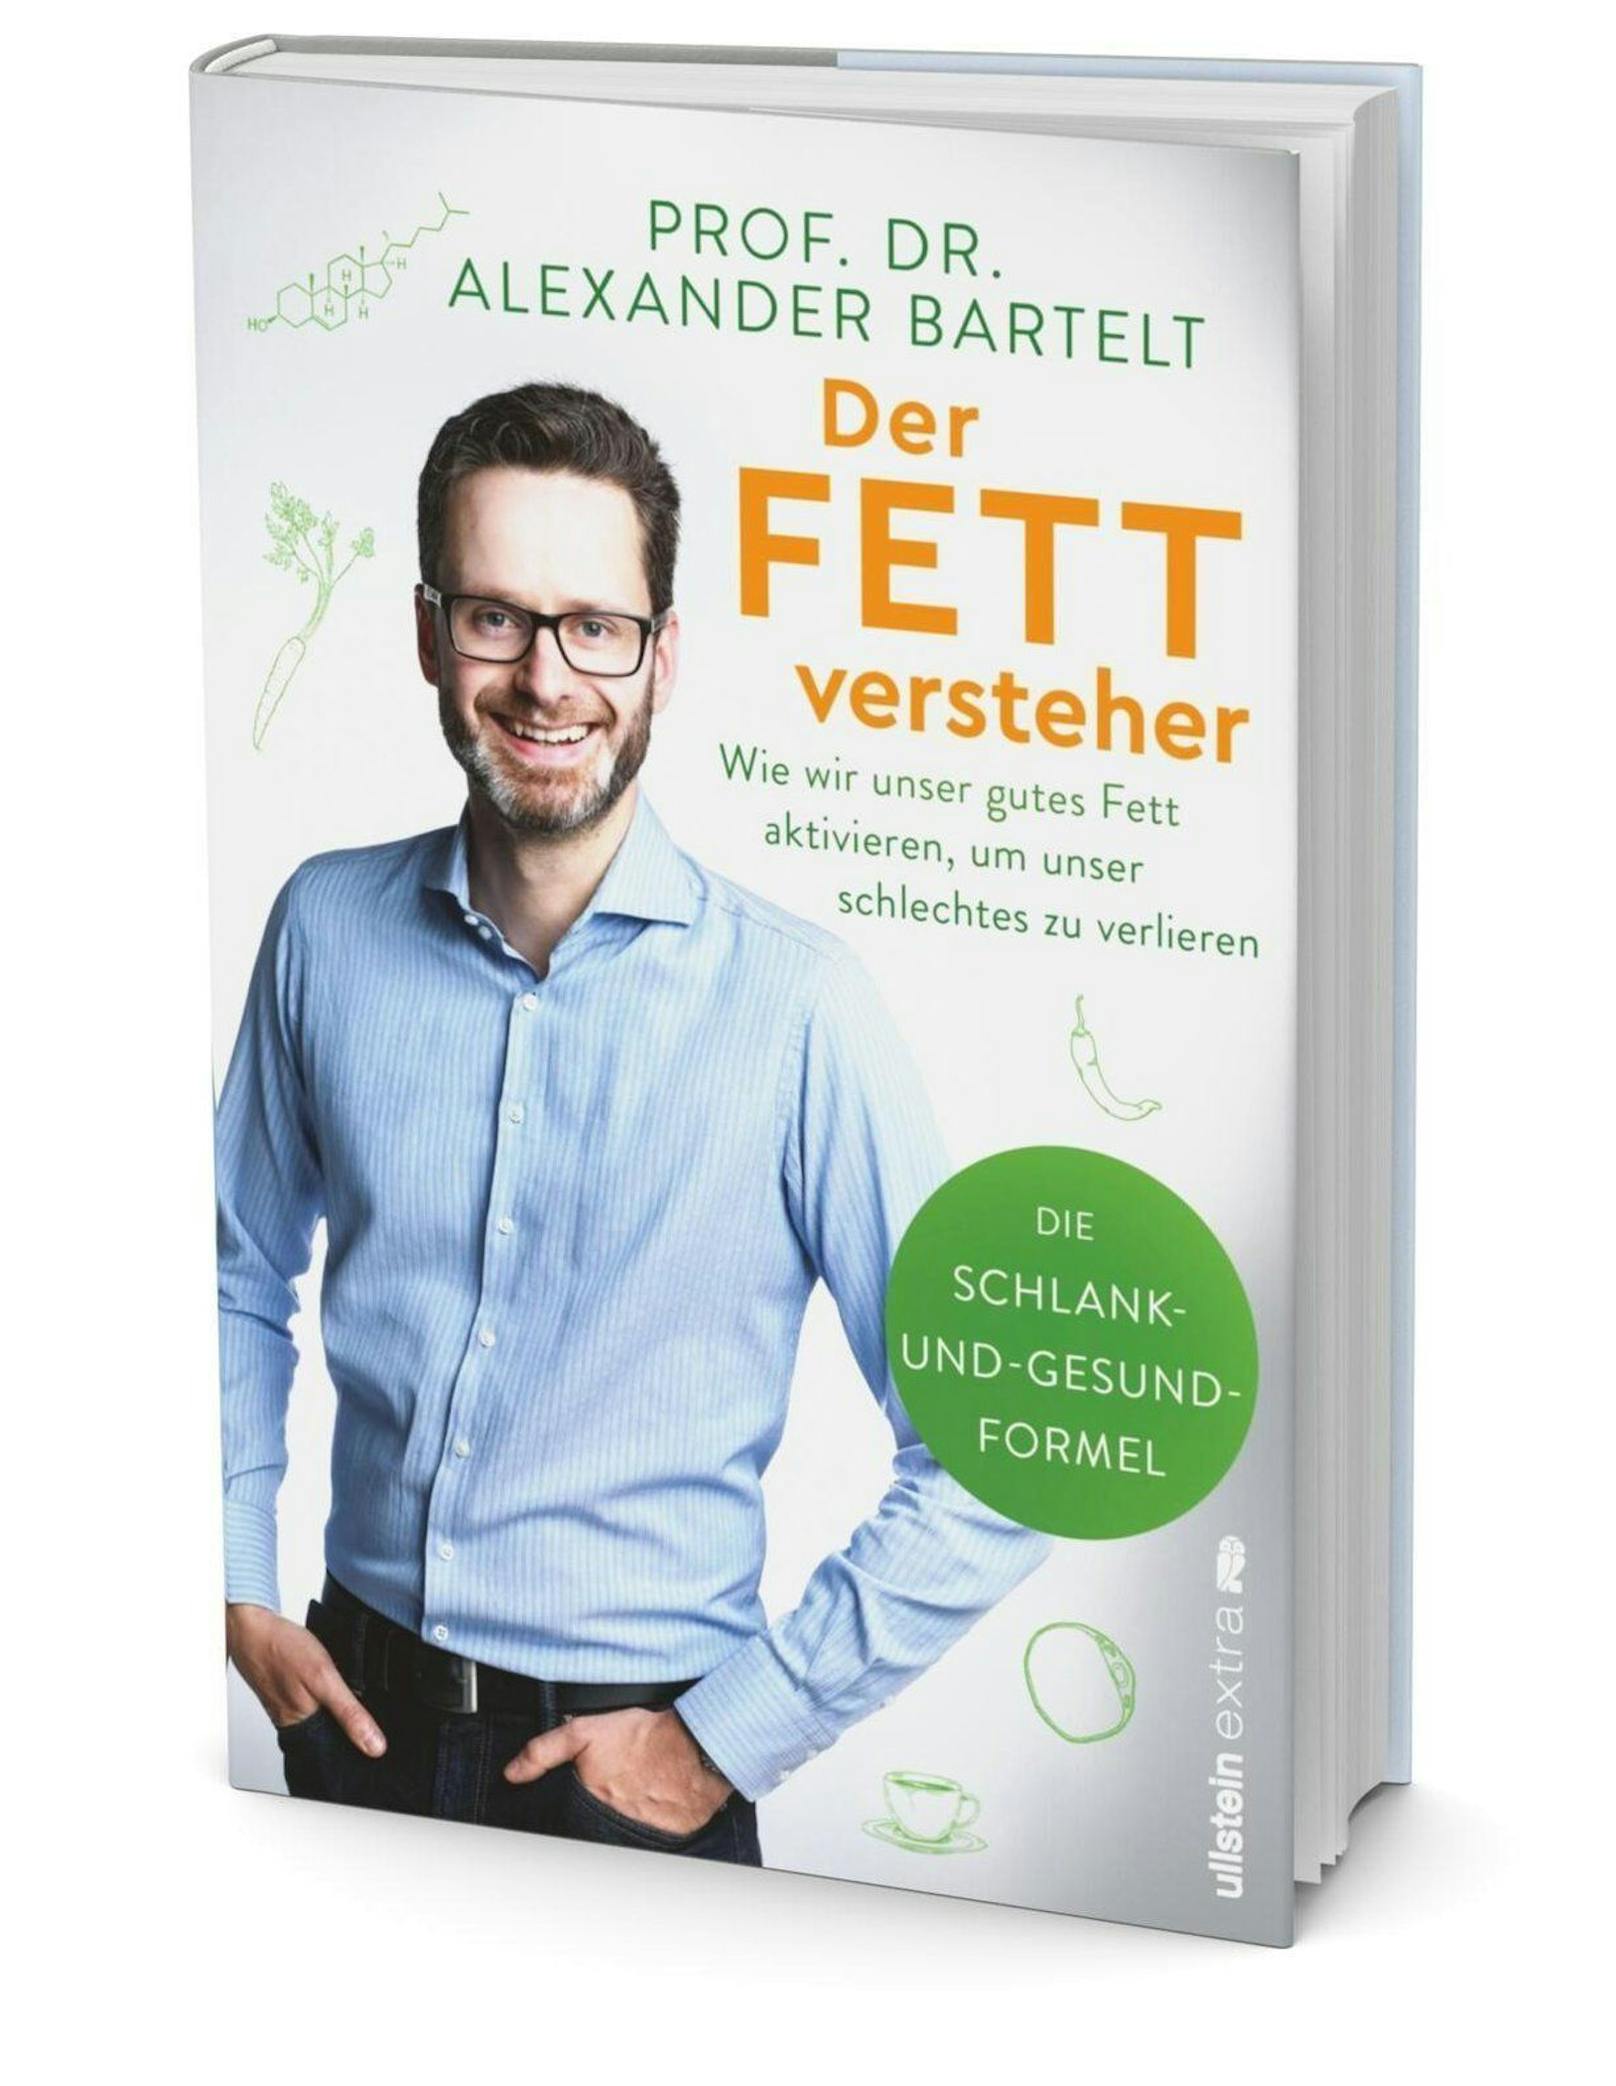 "Der Fettversteher" von Prof. Dr. Alexander Bartelt, 17,90 Euro, erschienen im Ullstein Verlag.